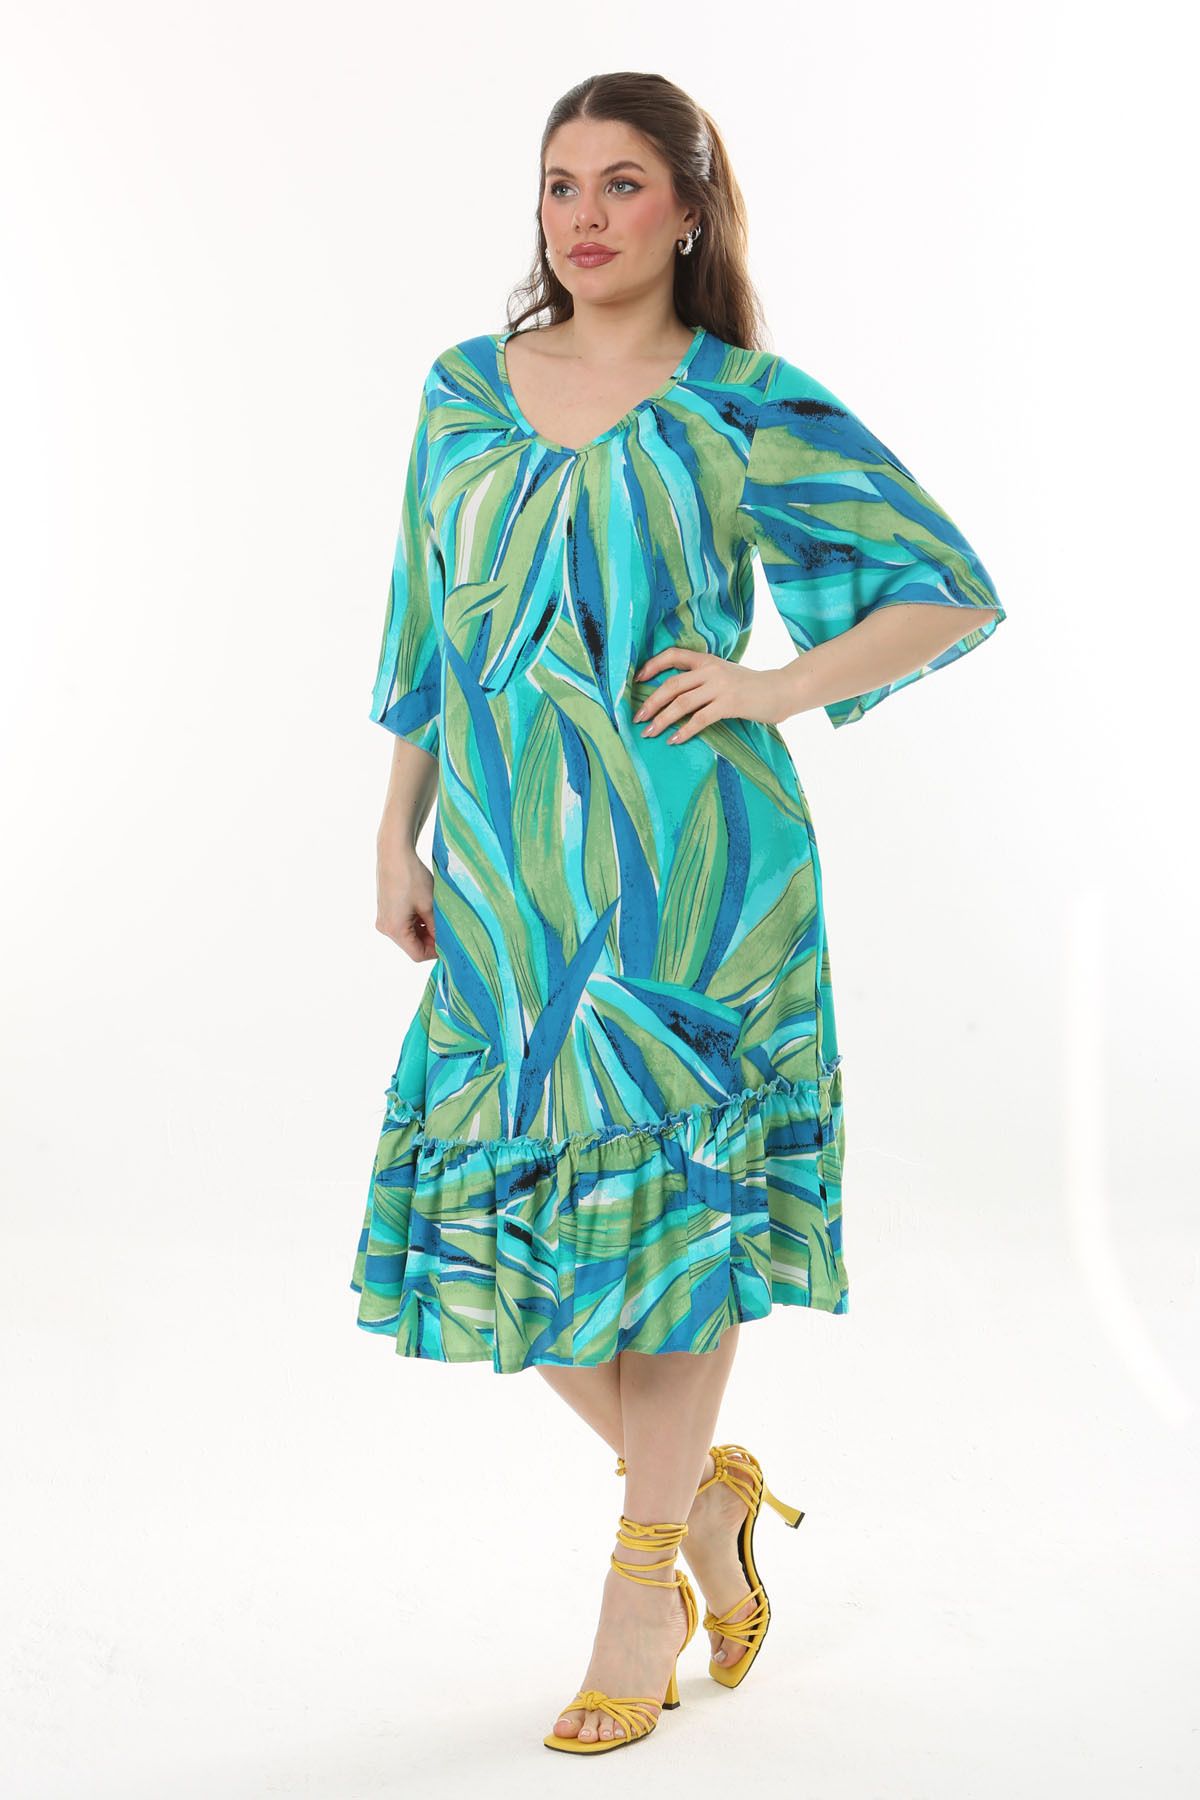 Mooi XXL Kadın Mavi Yeşil Yaprak Desen Eteği Fırfırlı Büyük Beden Bağlamalı Dokuma Viskon Elbise